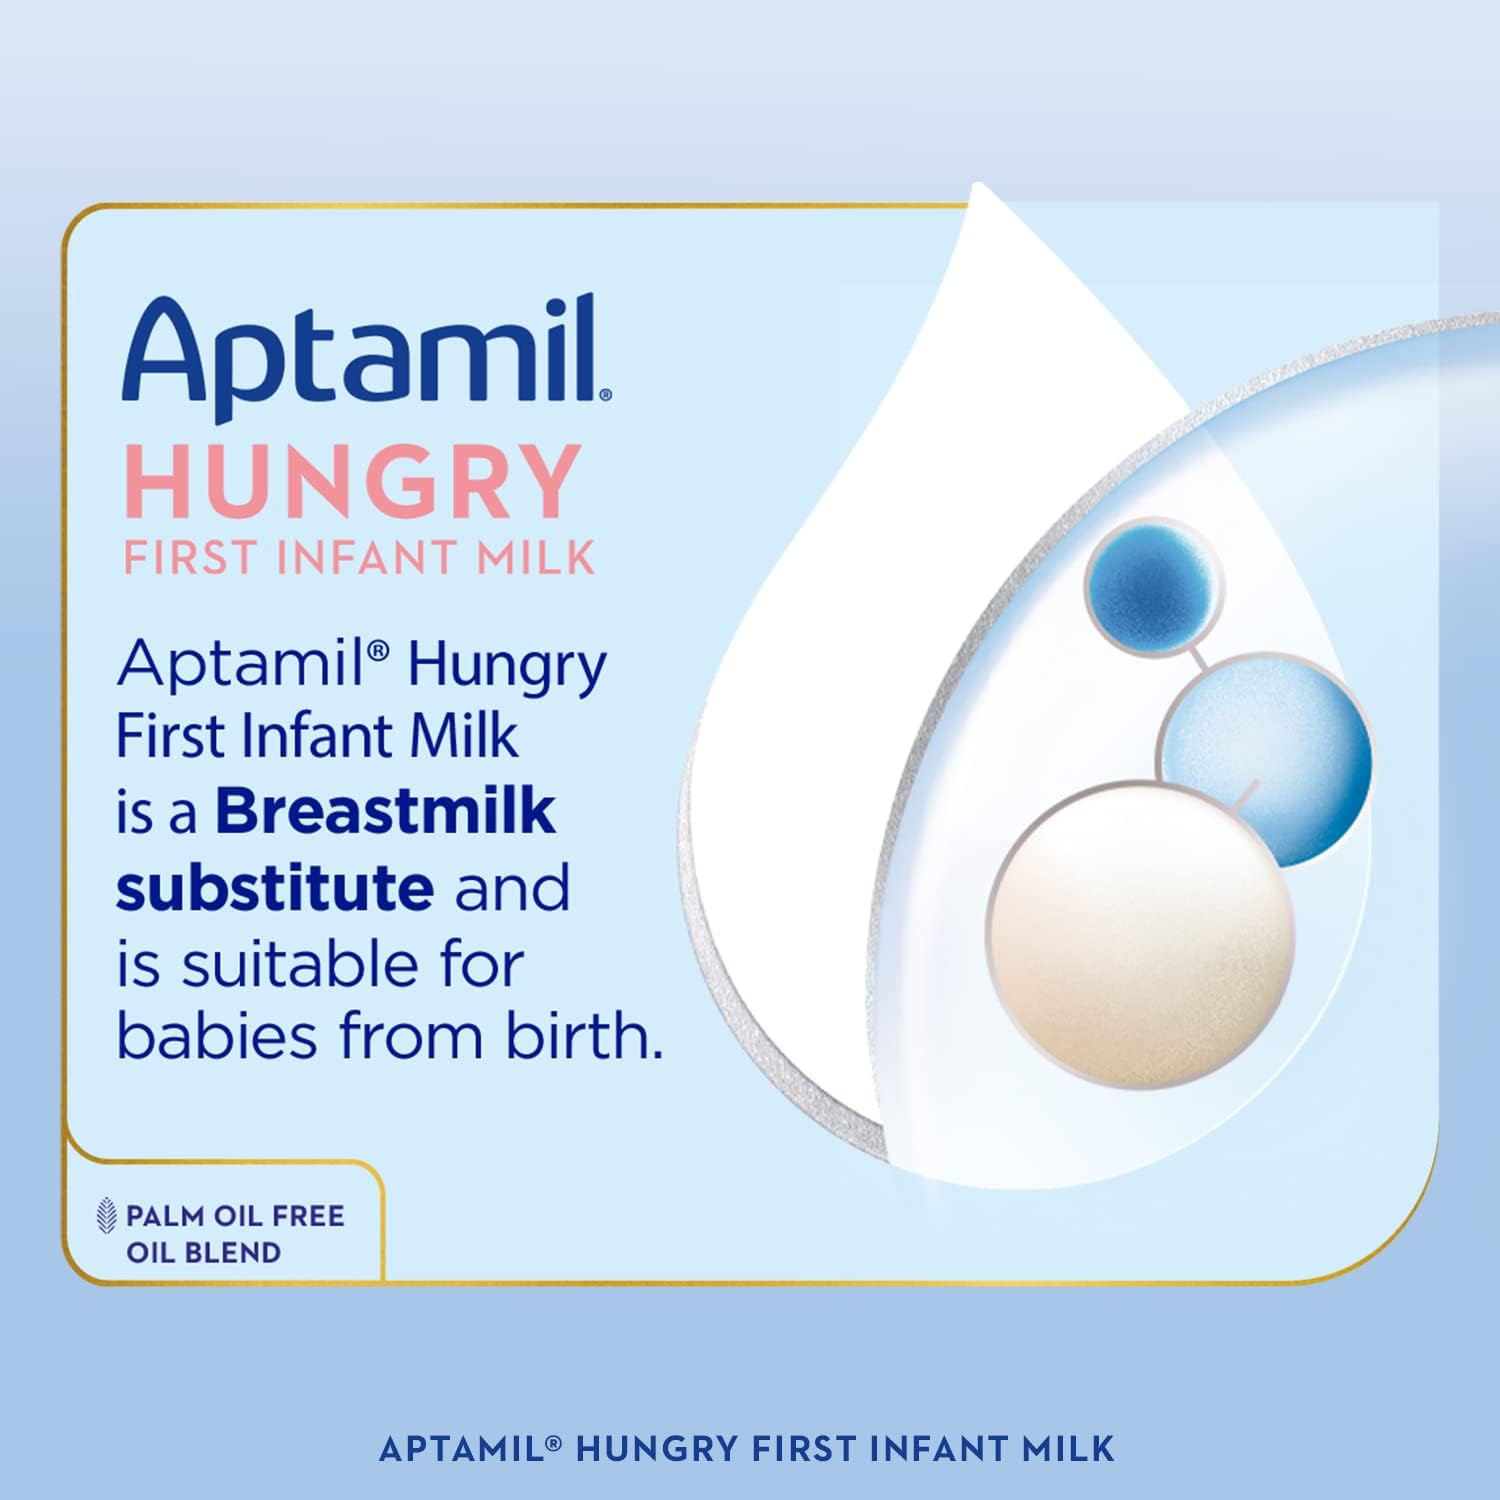 Aptamil hungry